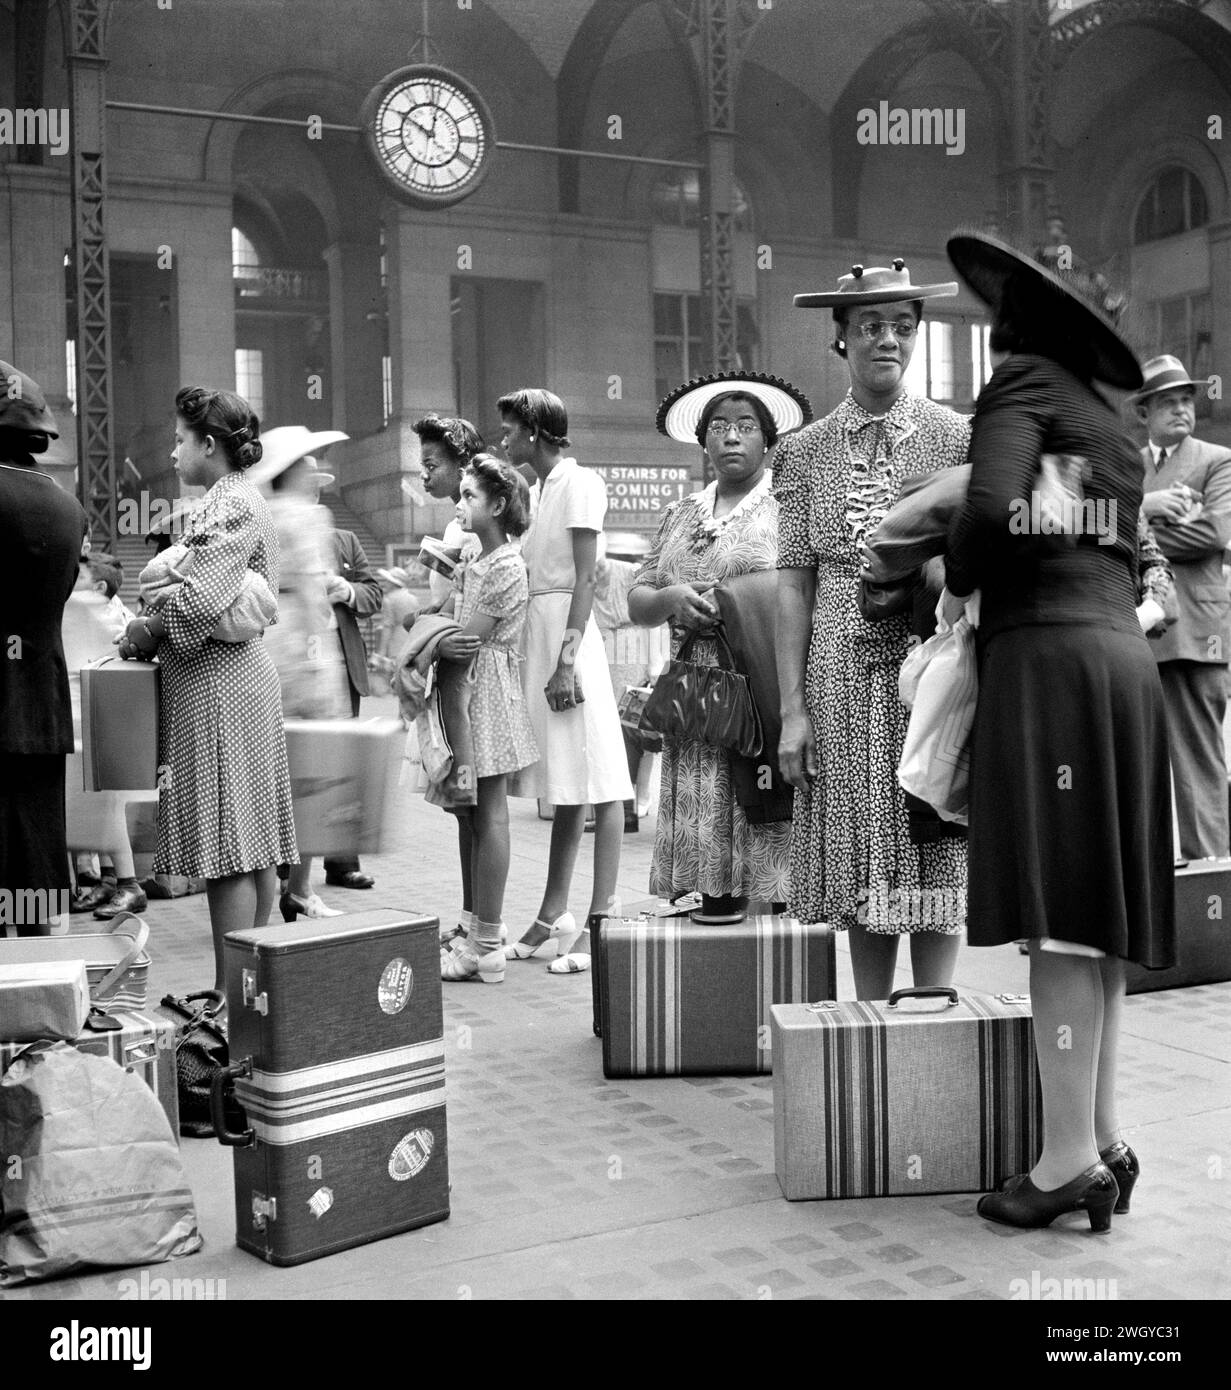 Gruppo di donne e bambini in attesa del treno, Pennsylvania Station, New York City, New York, USA, Marjory Collins, U.S. Office of War Information, agosto 1942 Foto Stock